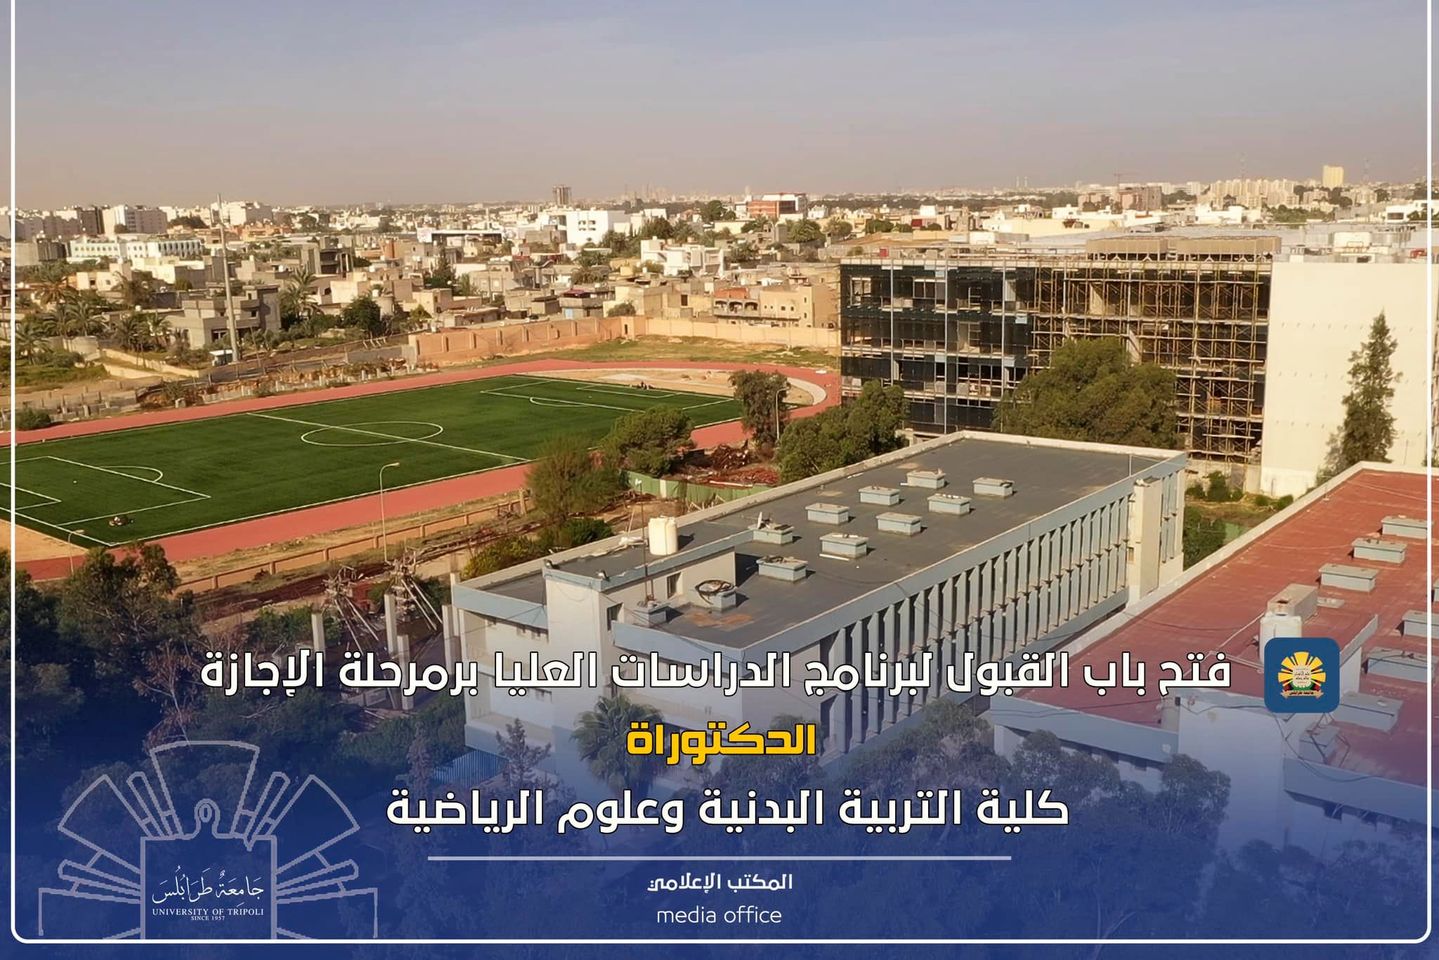 جامعة طرابلس تعلن فتح باب قبول الطلاب في مرحلة الدكتوراه بثلاثة أقسام